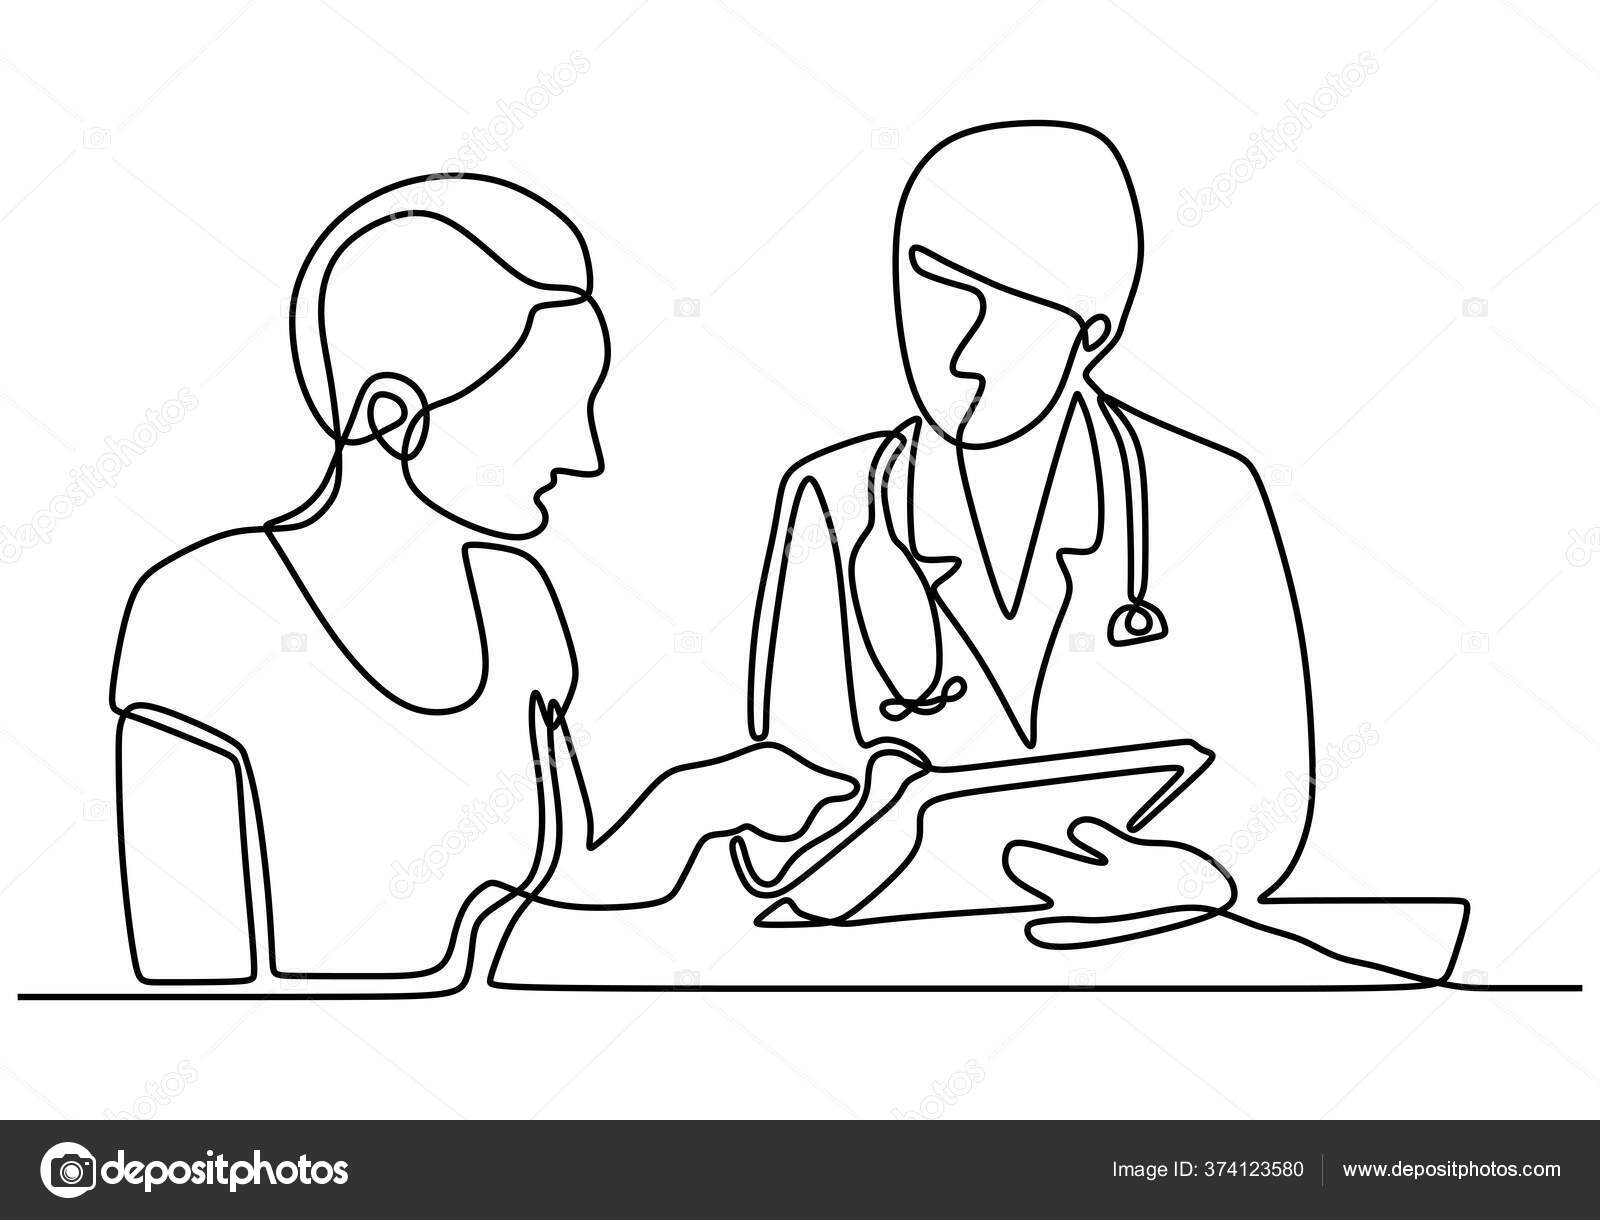 Arquivo de Desenho de uma consulta médica - Páginal Inicial